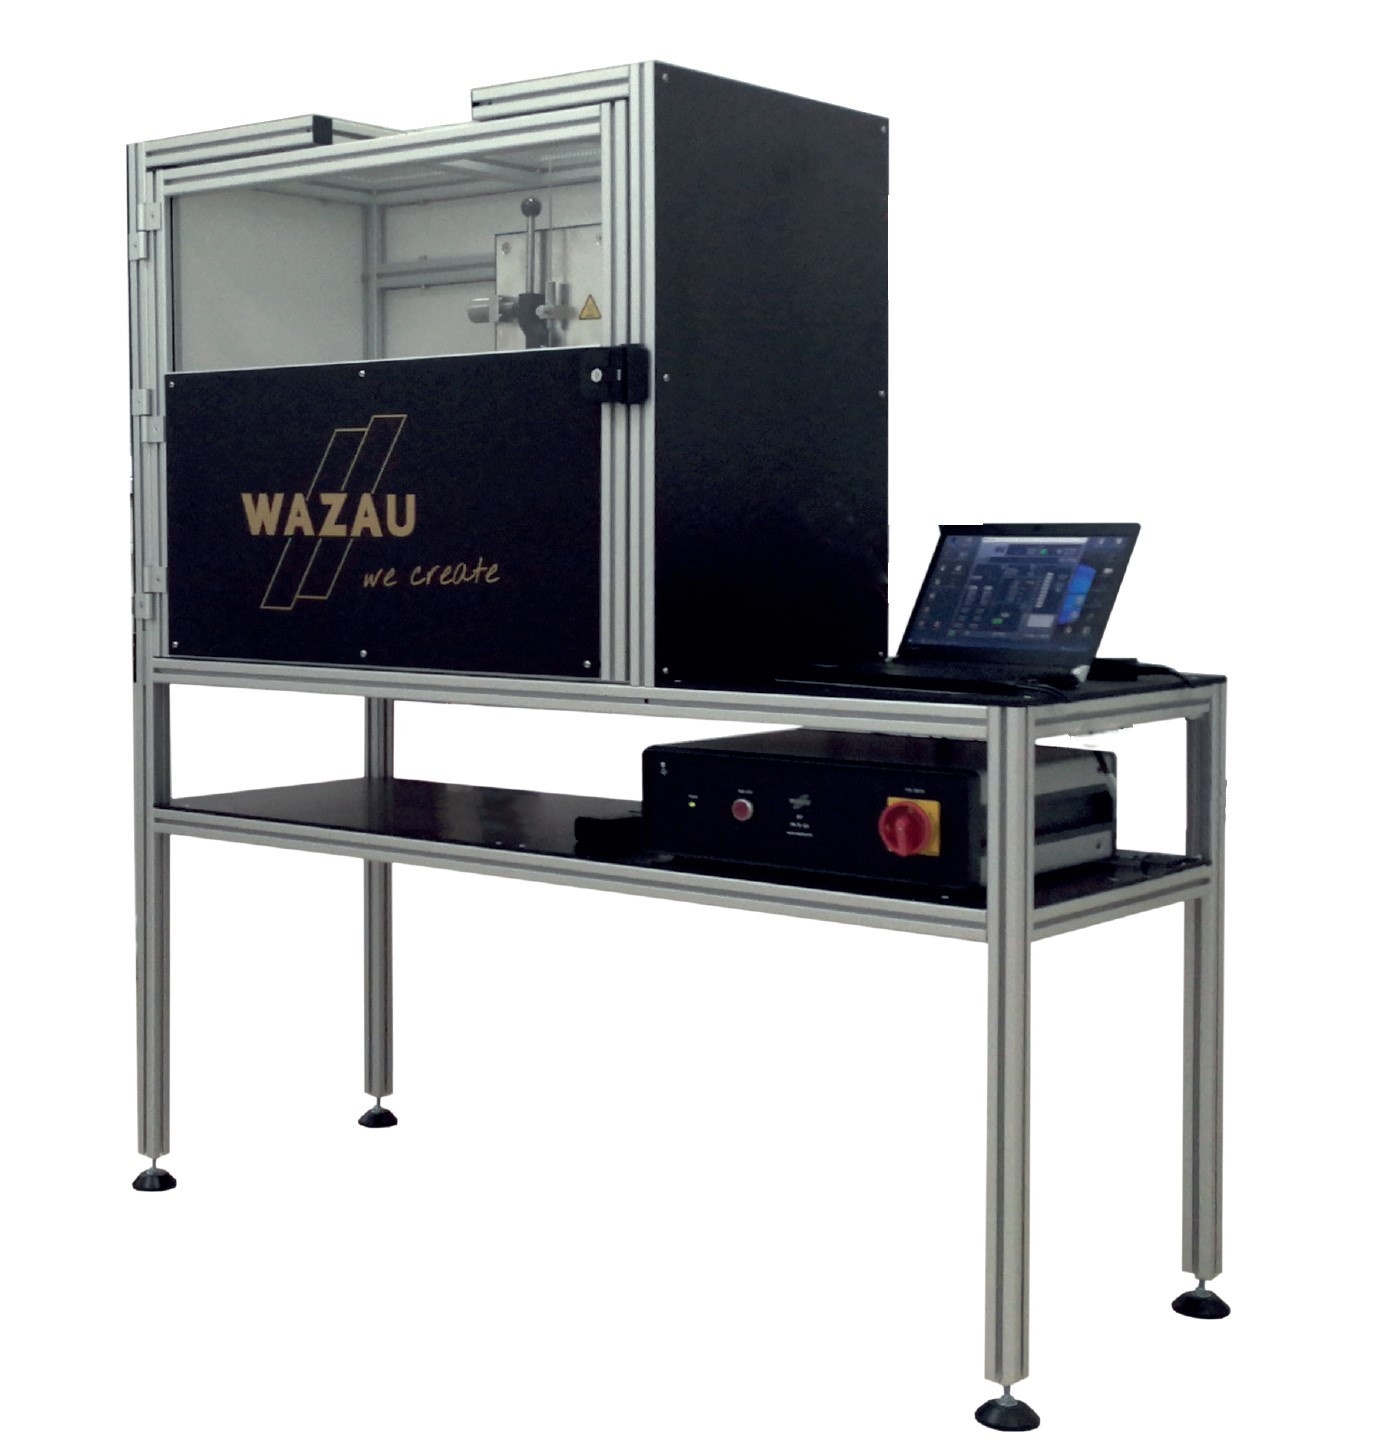 WAZAU SPT金属飞溅热防护测试仪ISO 9150 EN348的图片